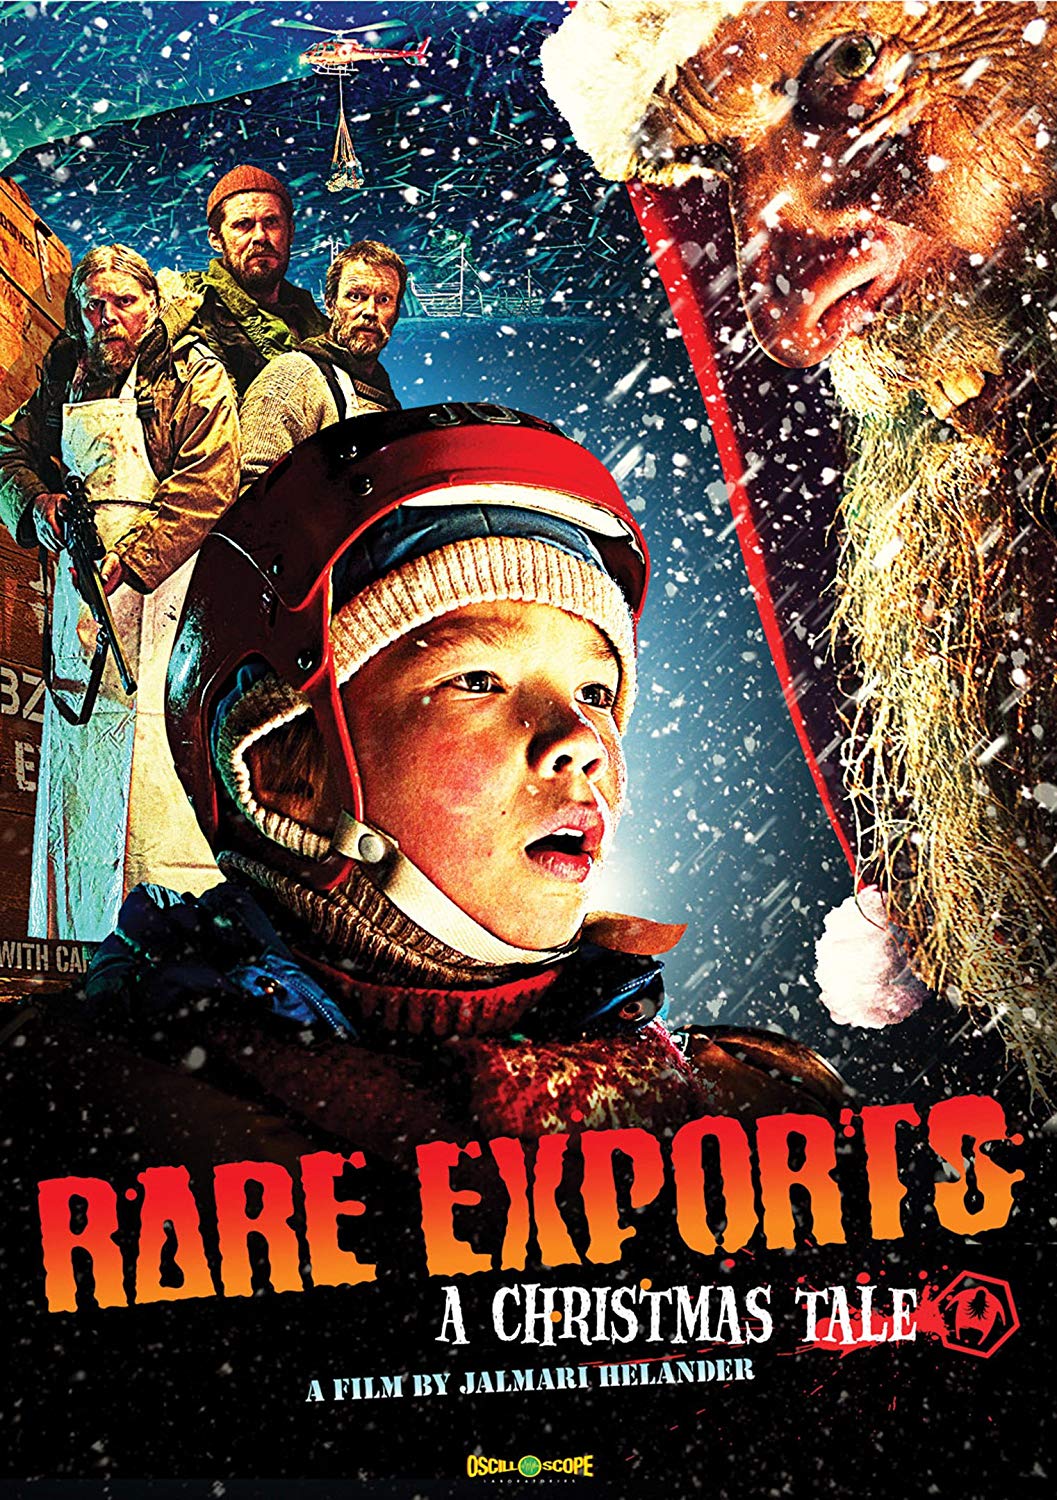 Rare Exports Main Poster